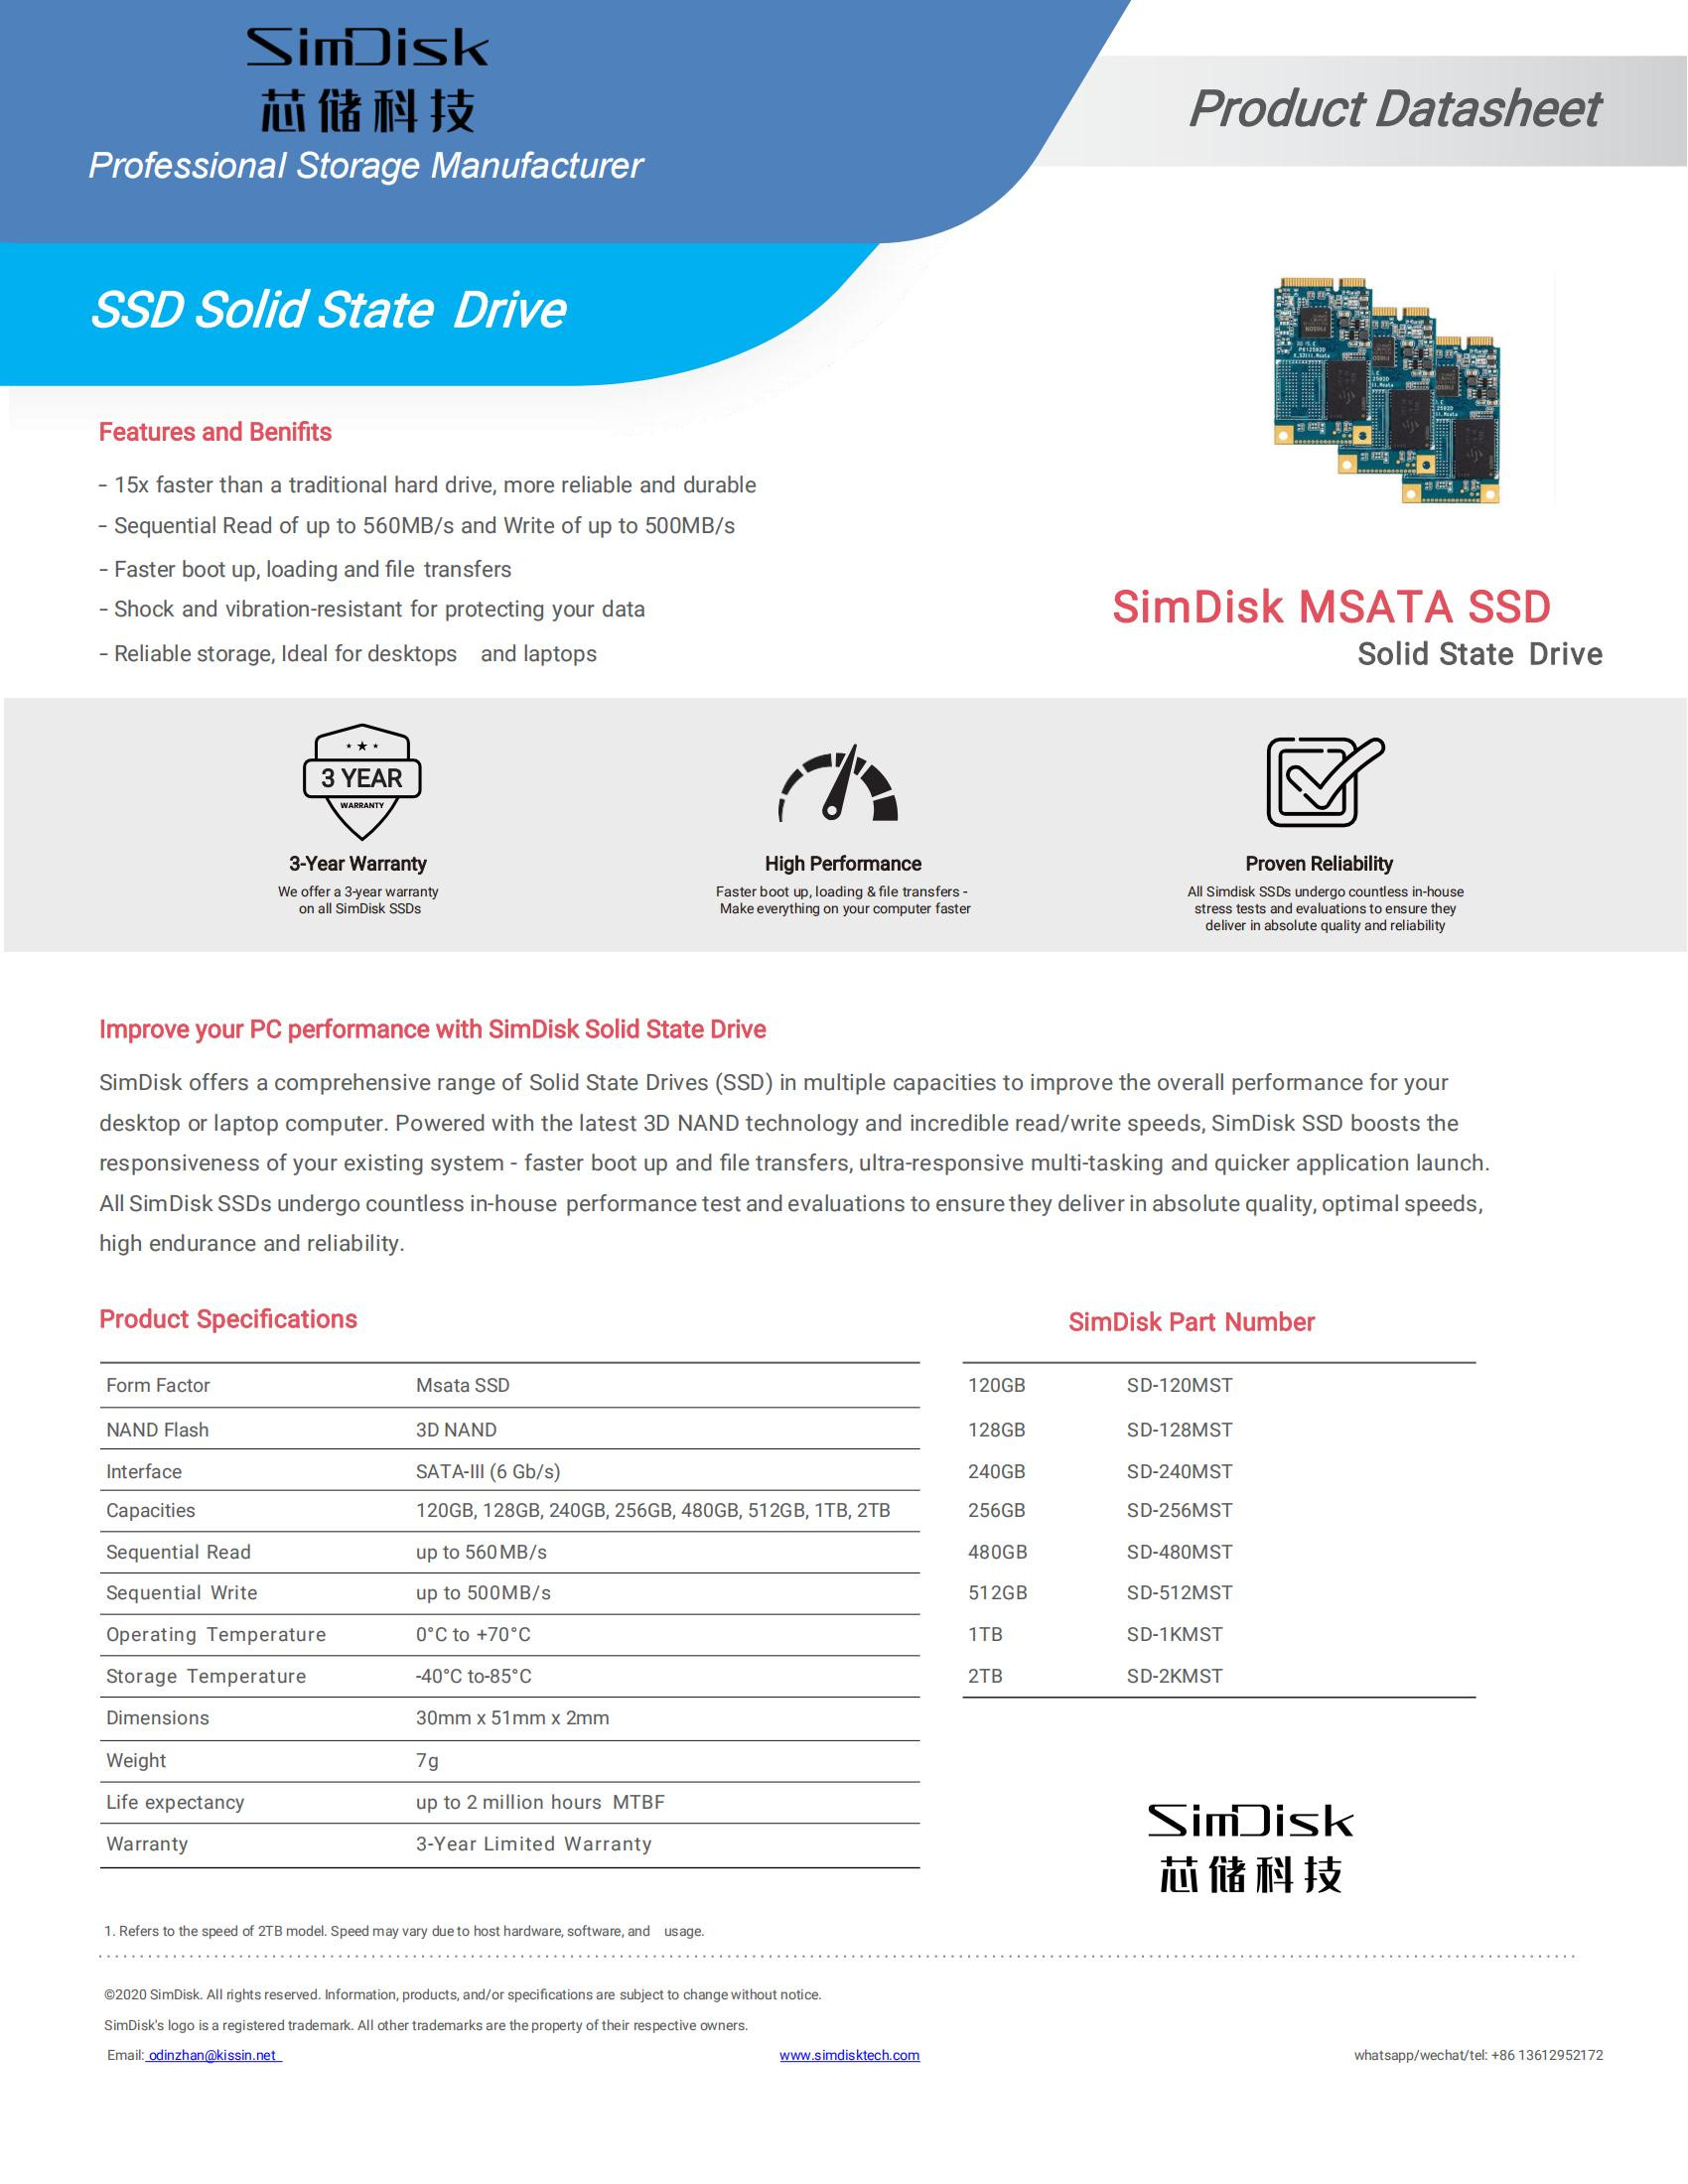 Ficha de Dados SimDiks Msata SSD_00